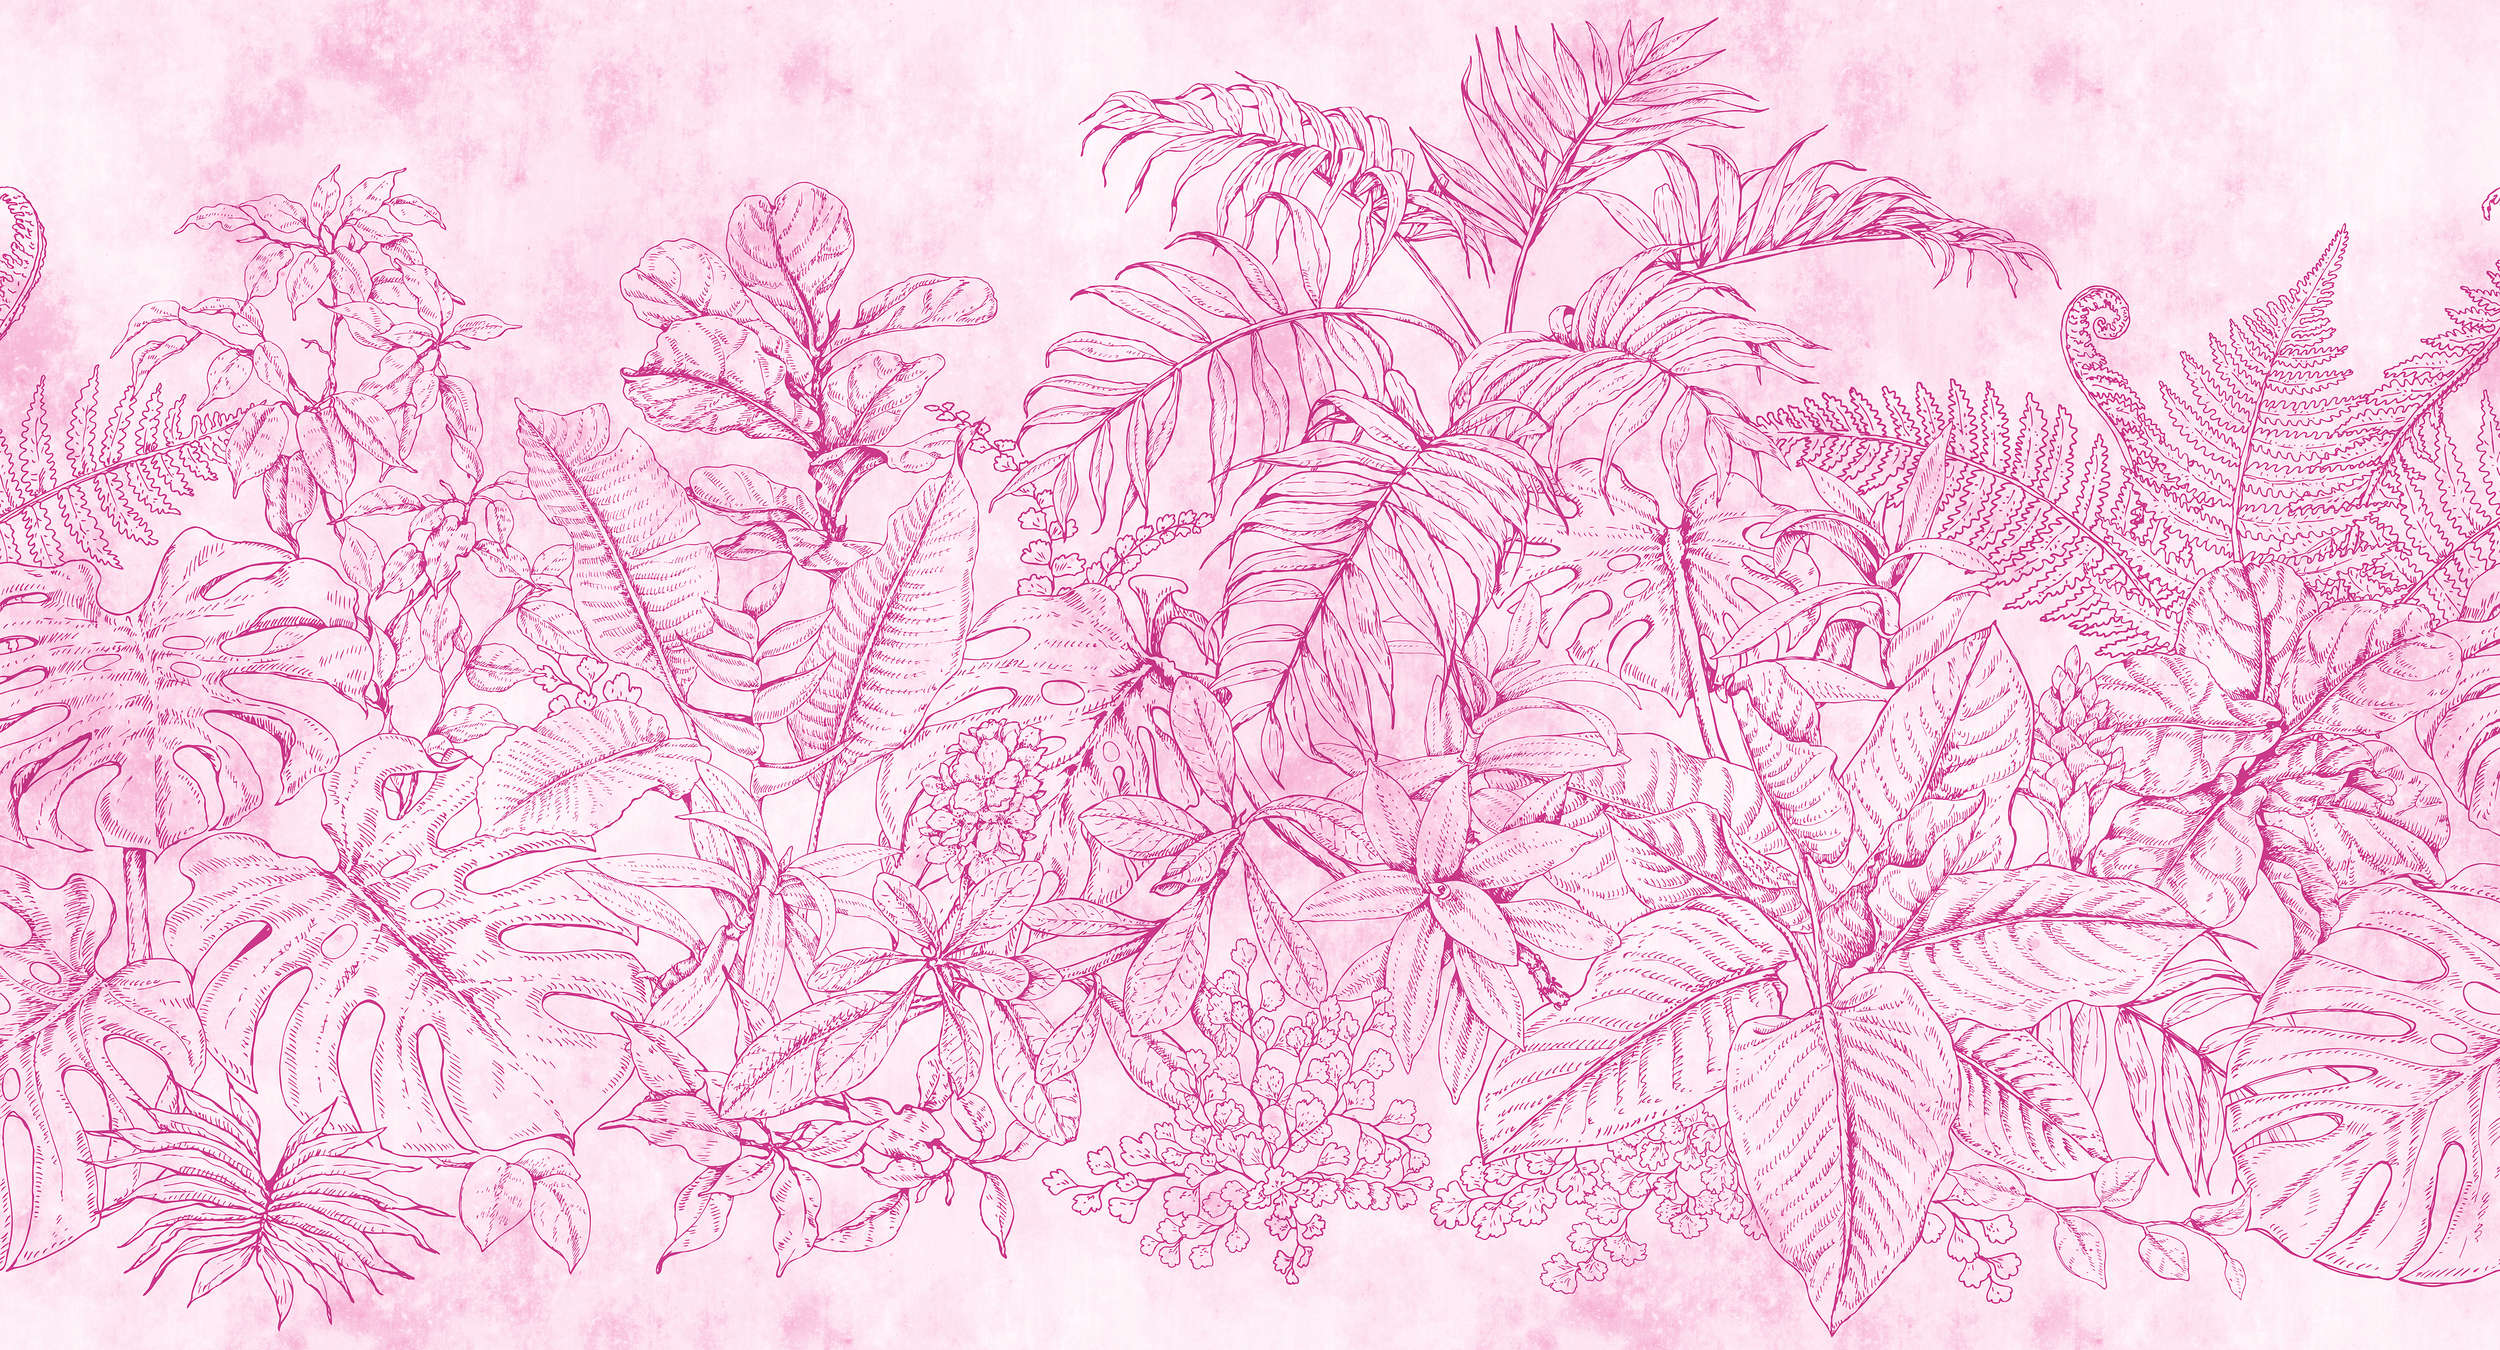             Papel pintado con motivo de flores y hojas - rosa, crema
        